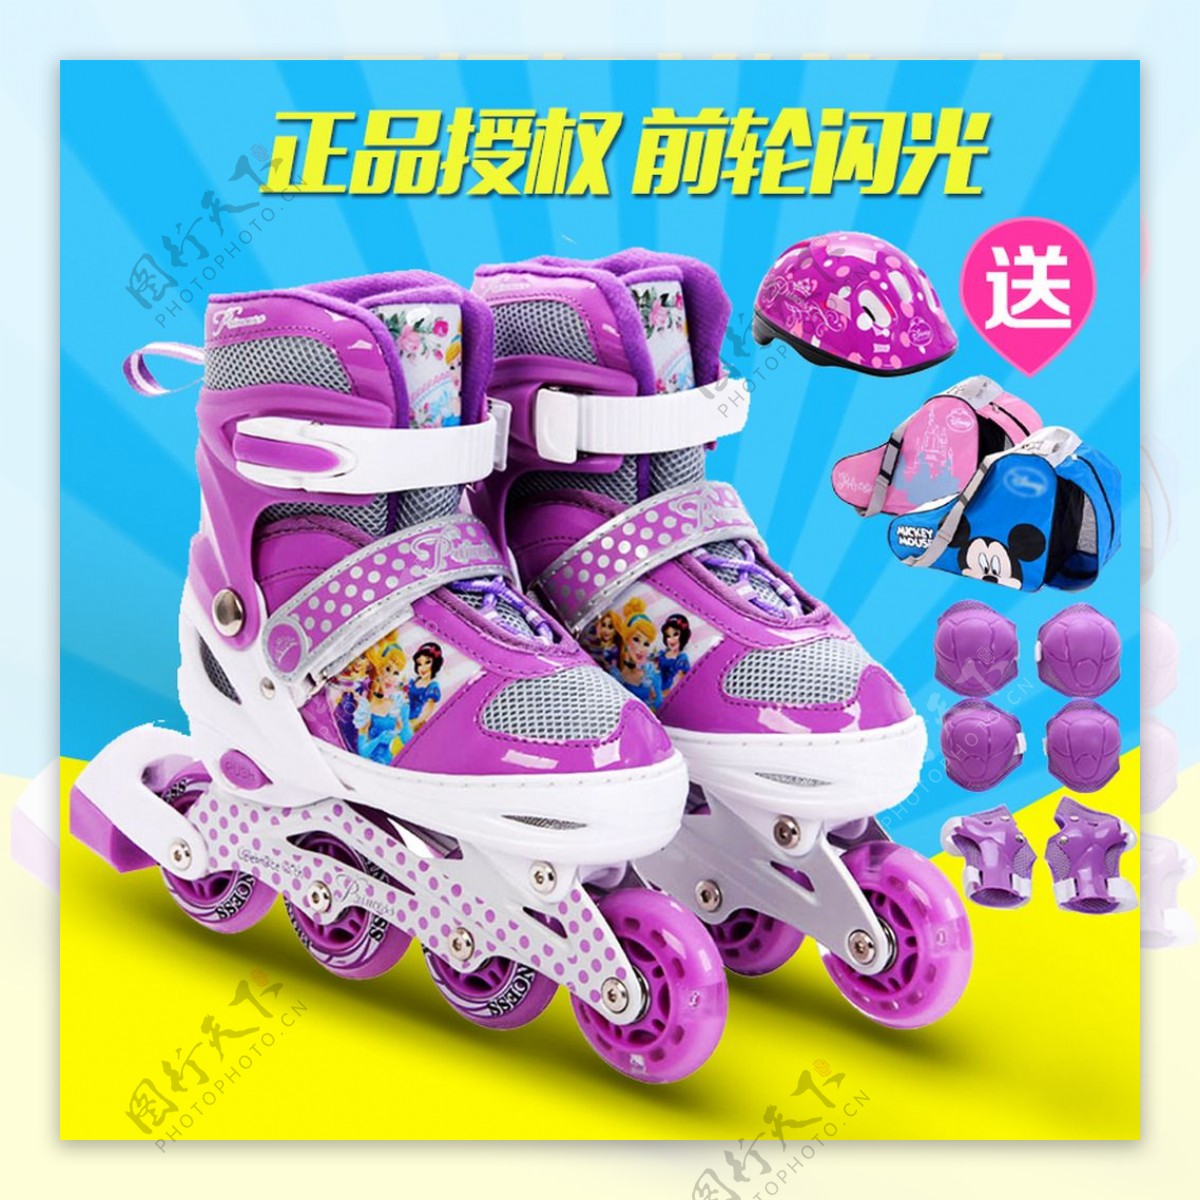 迪士尼儿童轮滑鞋溜冰鞋主图直通车图